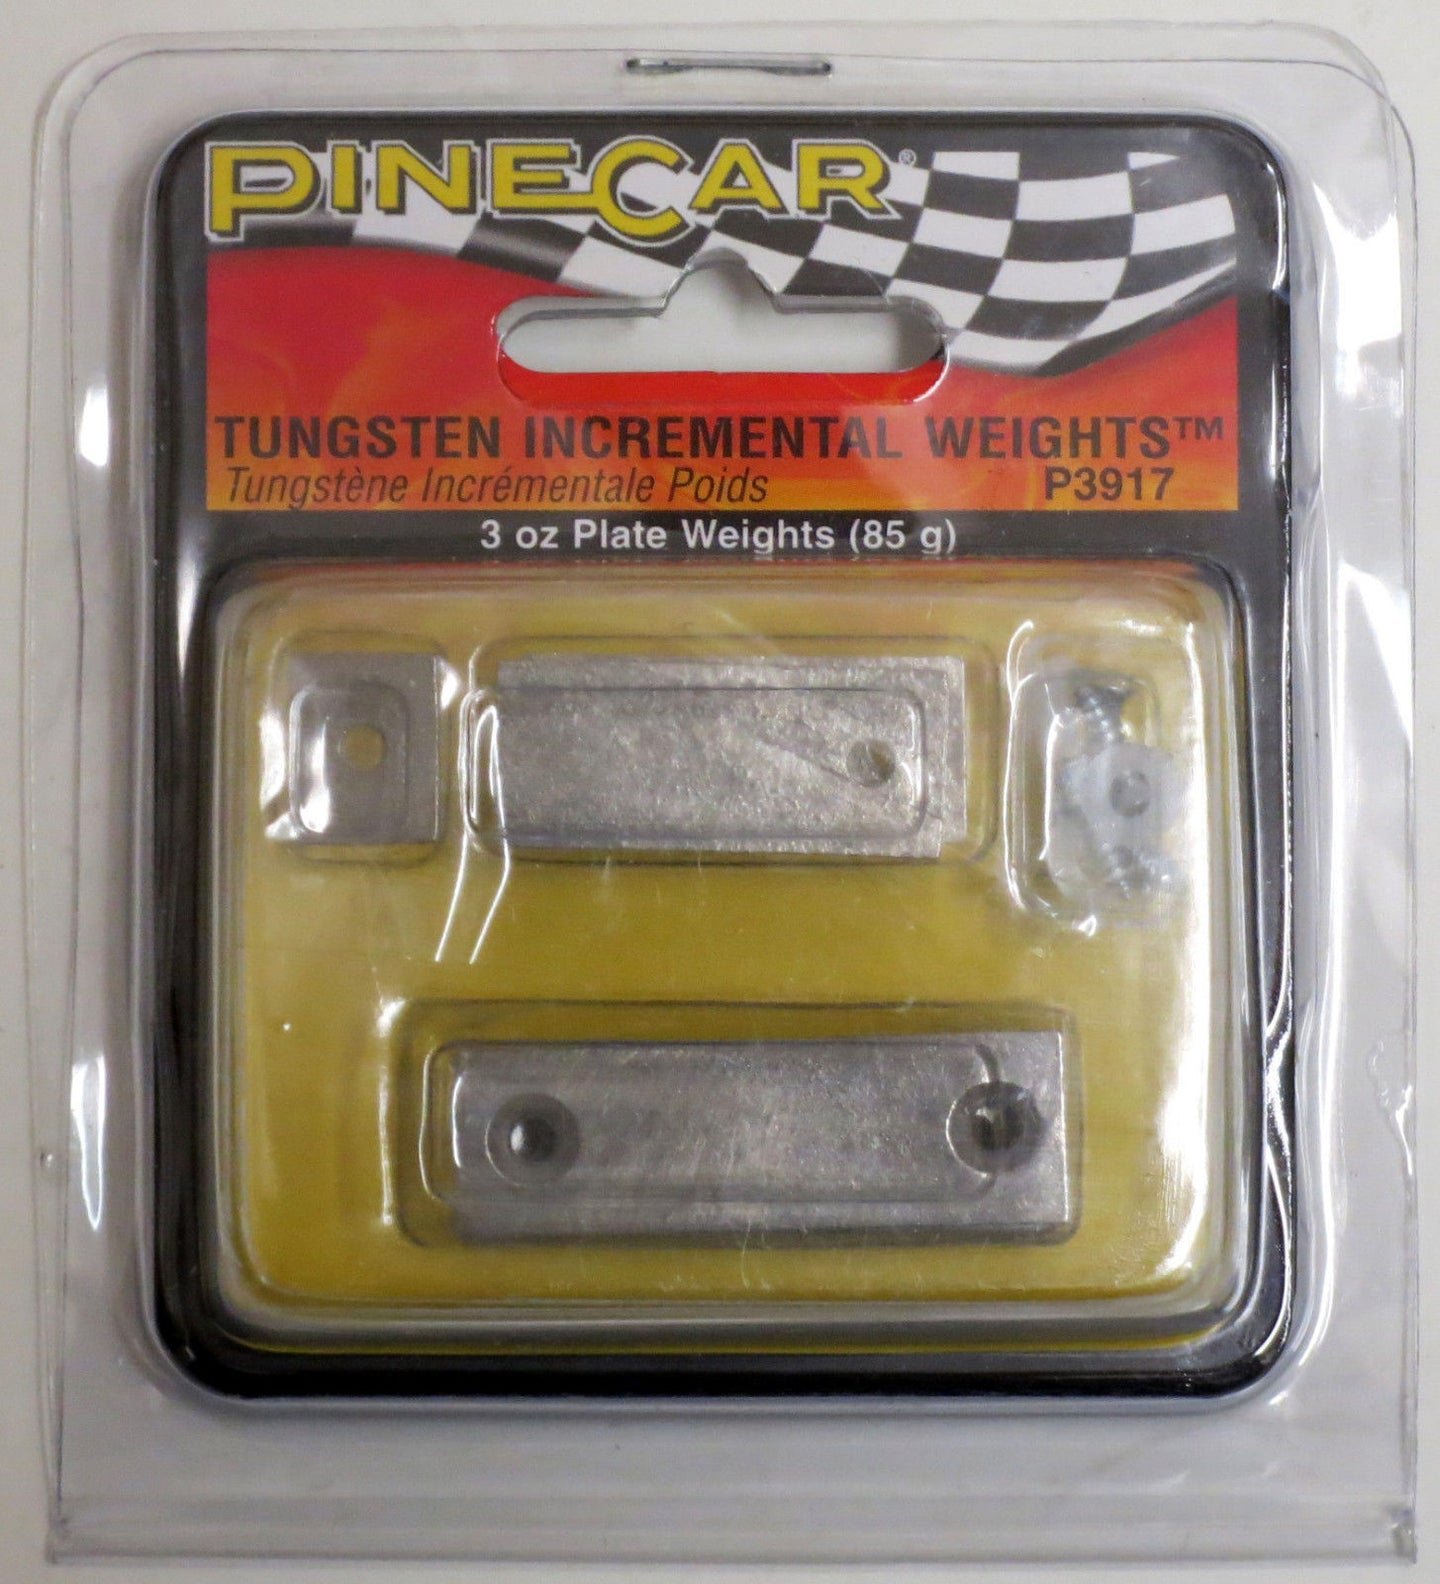 Pinecar Tungsten Incremental Plate Weights 3 oz